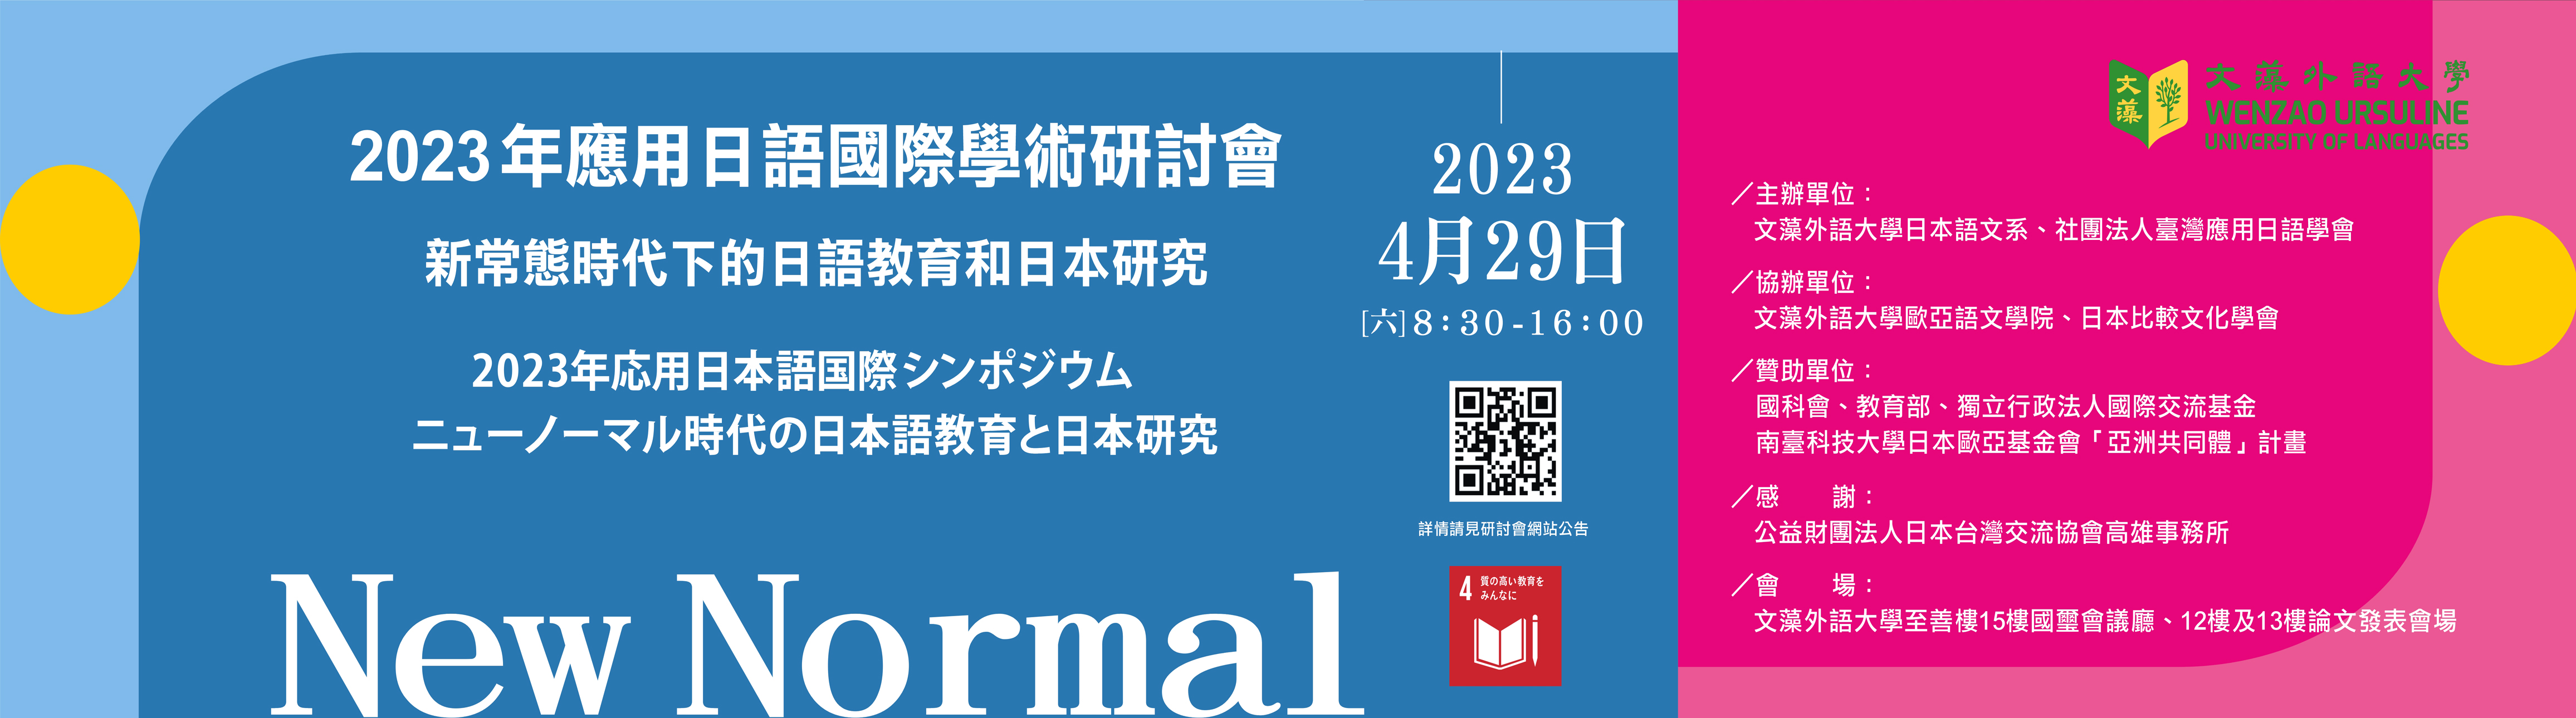 2023年應用日語國際學術研討會(院網)(另開新視窗)